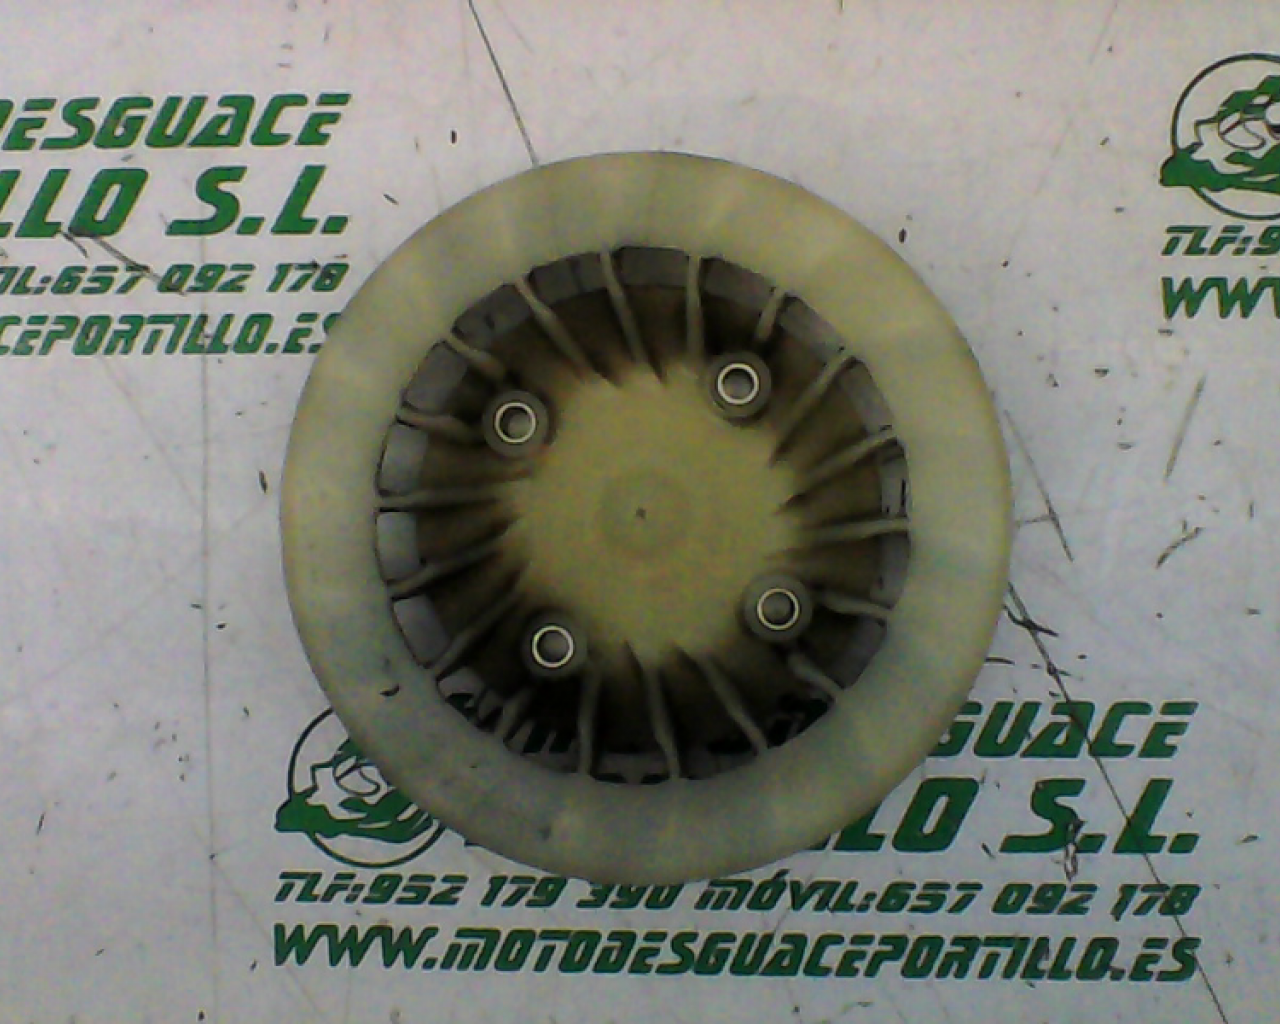 Ventilador del plato magnetico Honda Yupi  90 (1992-1994)